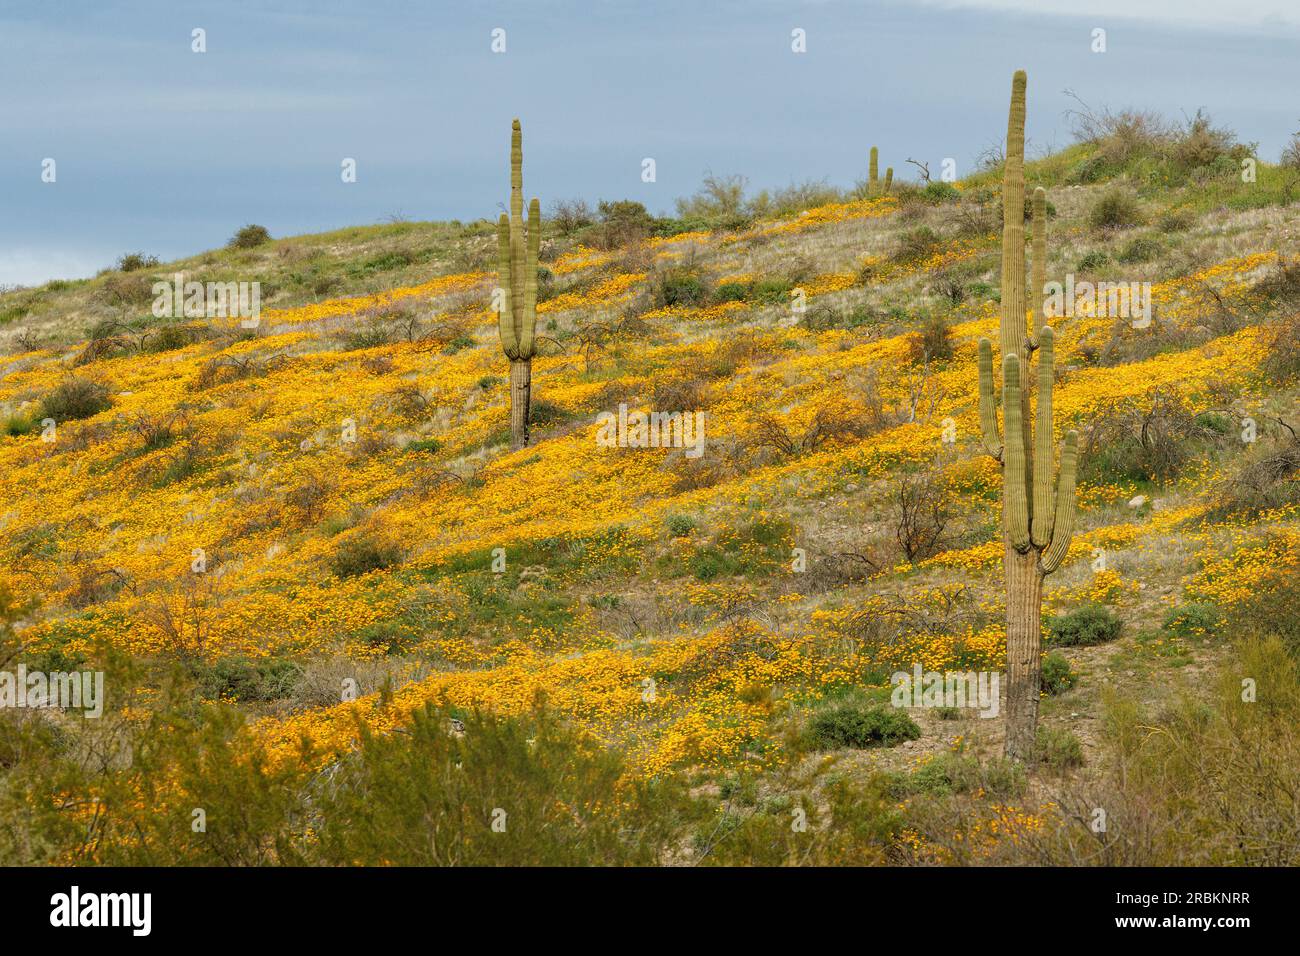 Coquelicot californien, coquelicot californica de Californie, coquelicot doré (Eschscholzia californica), fleurissant avec Saguaros au printemps, USA, Arizona, Phoenix Banque D'Images